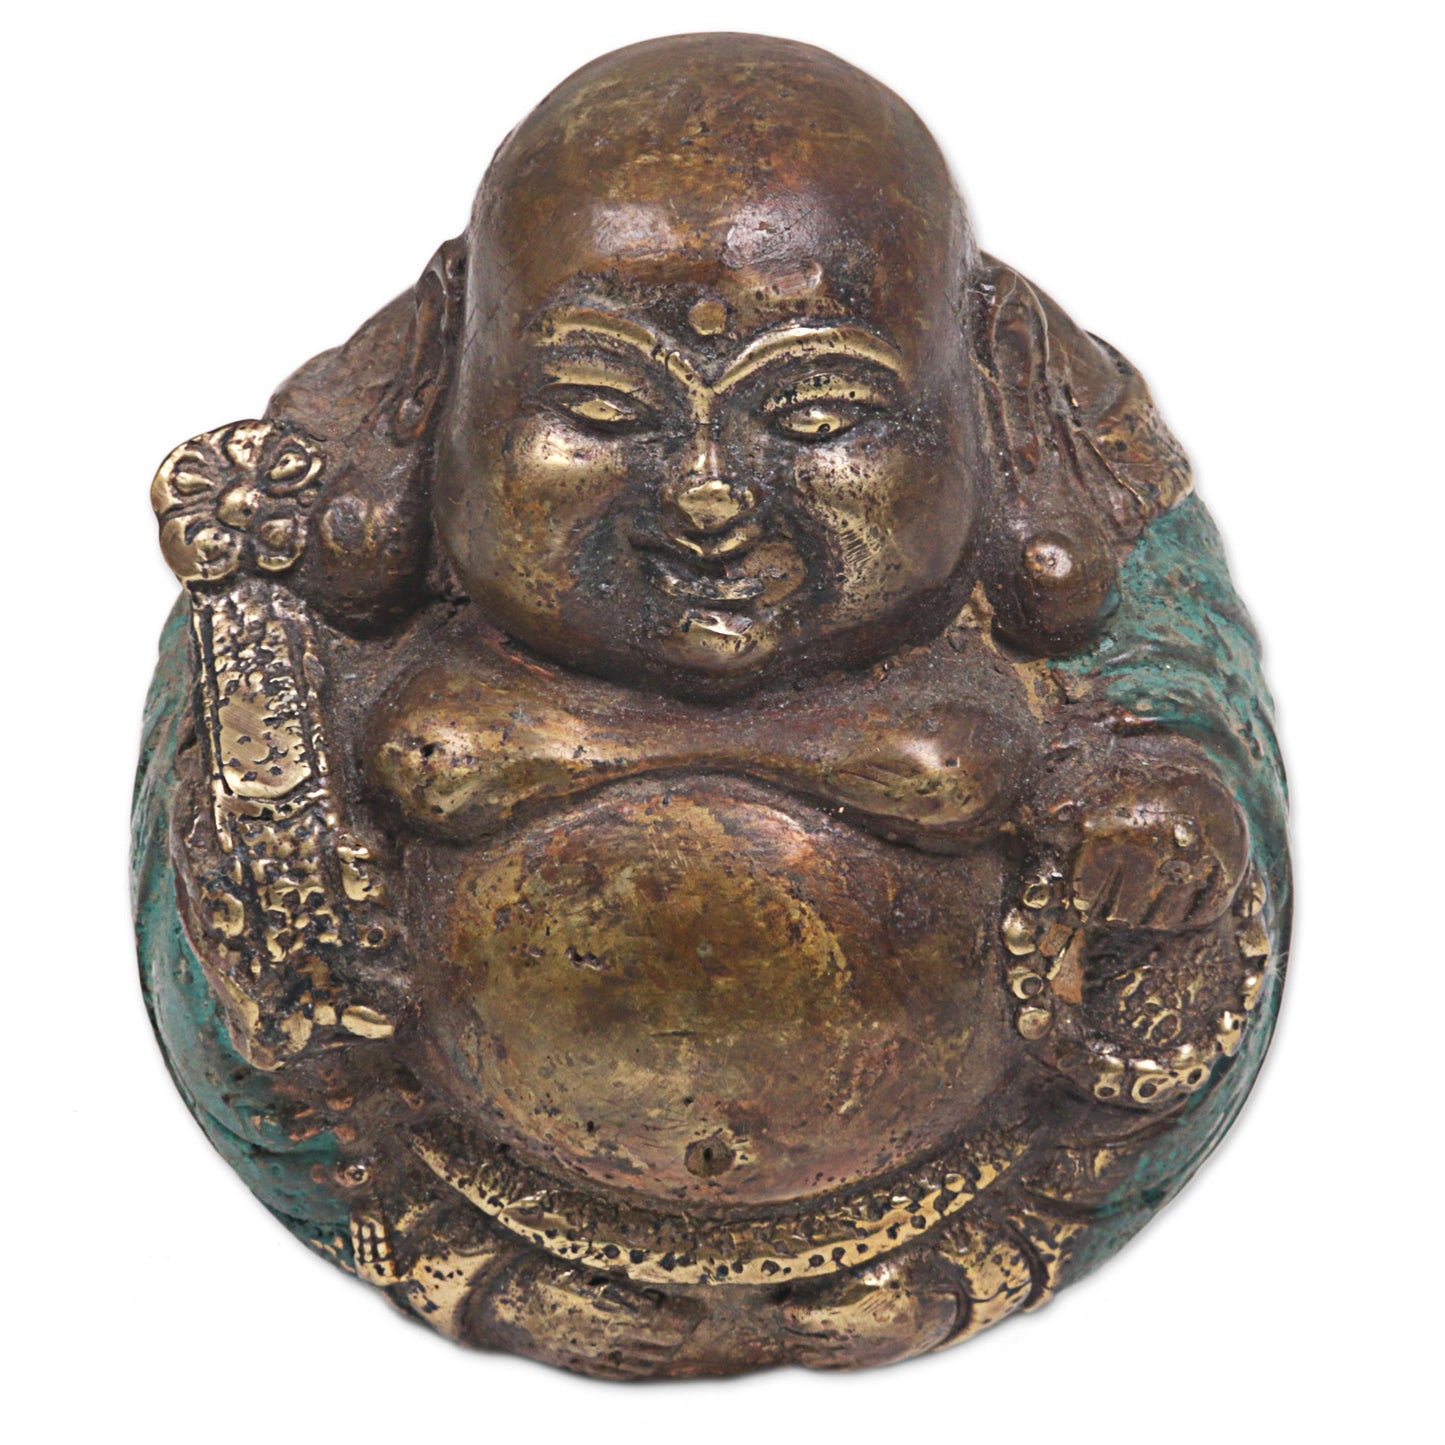 Welcoming Buddha Bronze Sculpture